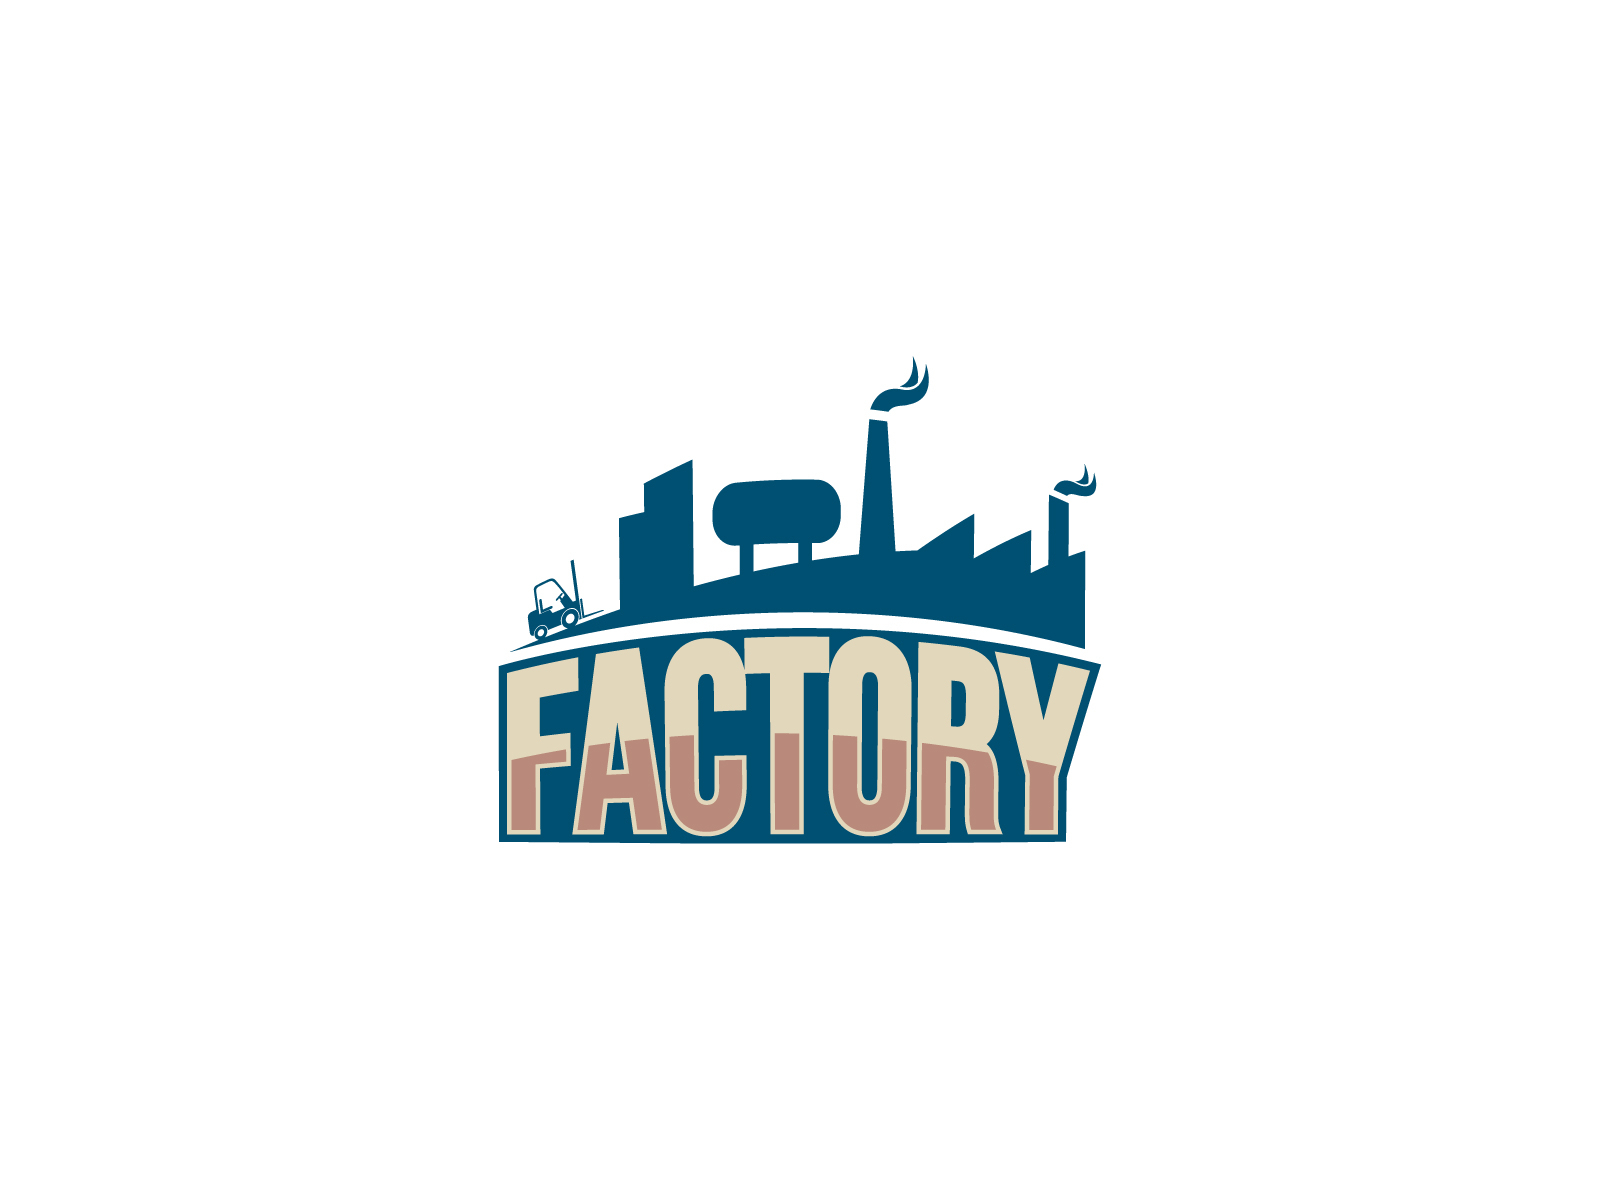 Factory Logo by Al JIhad on Dribbble